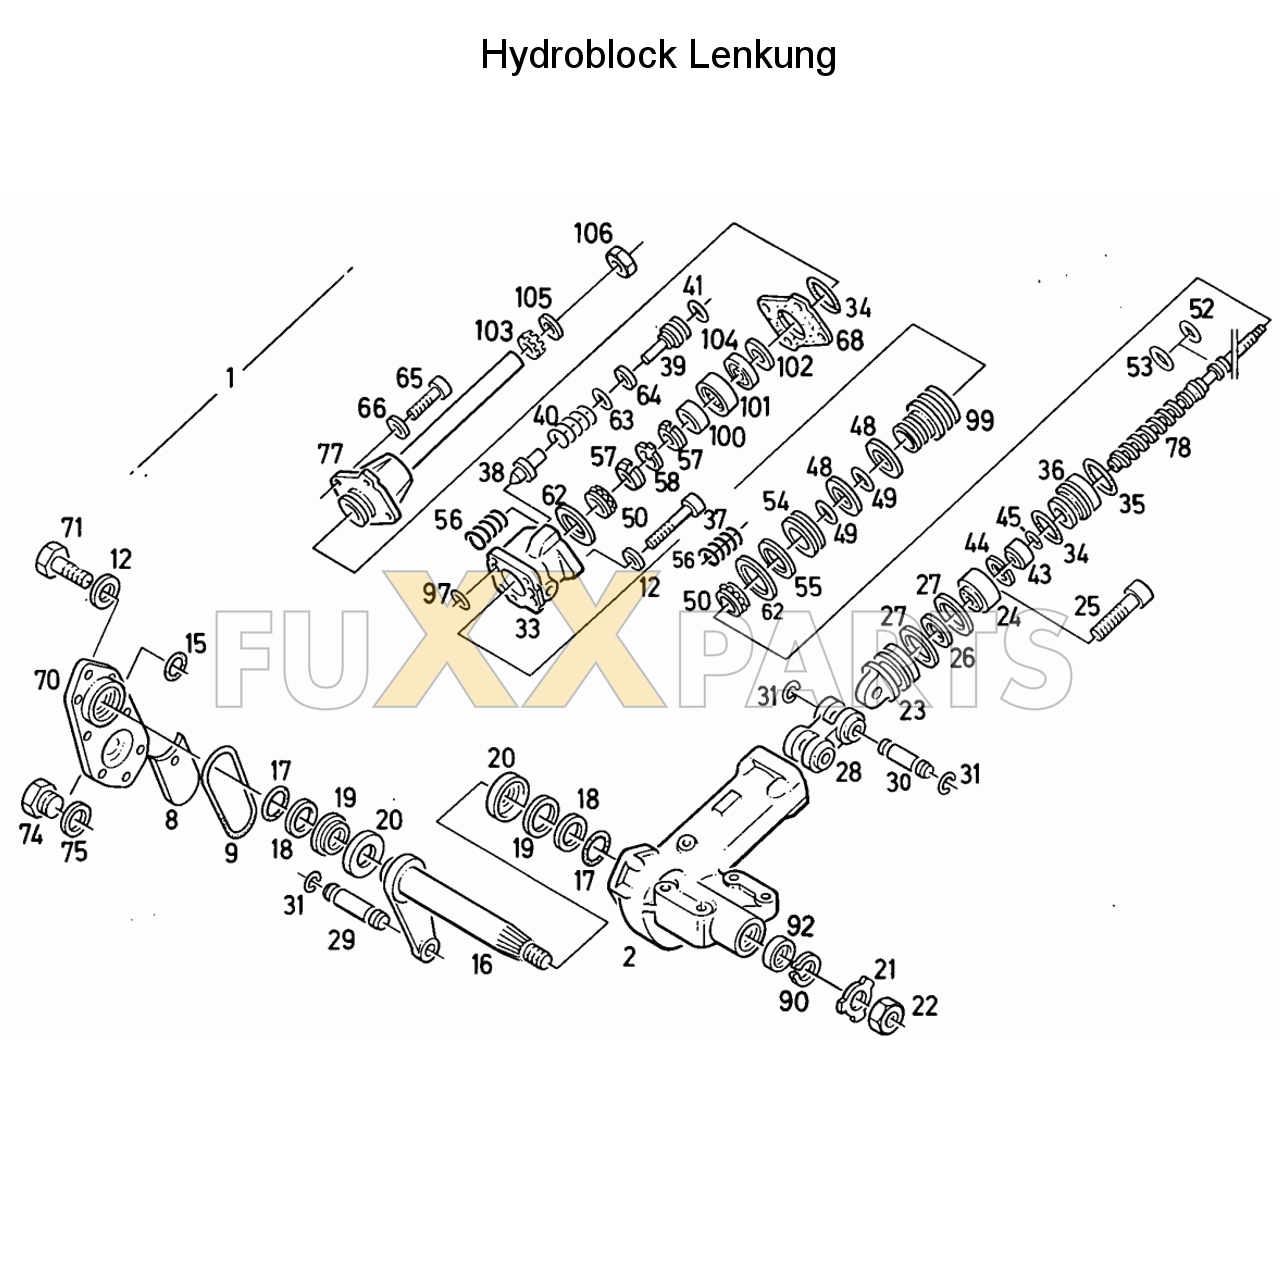 D 8006 Hydraulische Lenkung (Hydroblock) 2